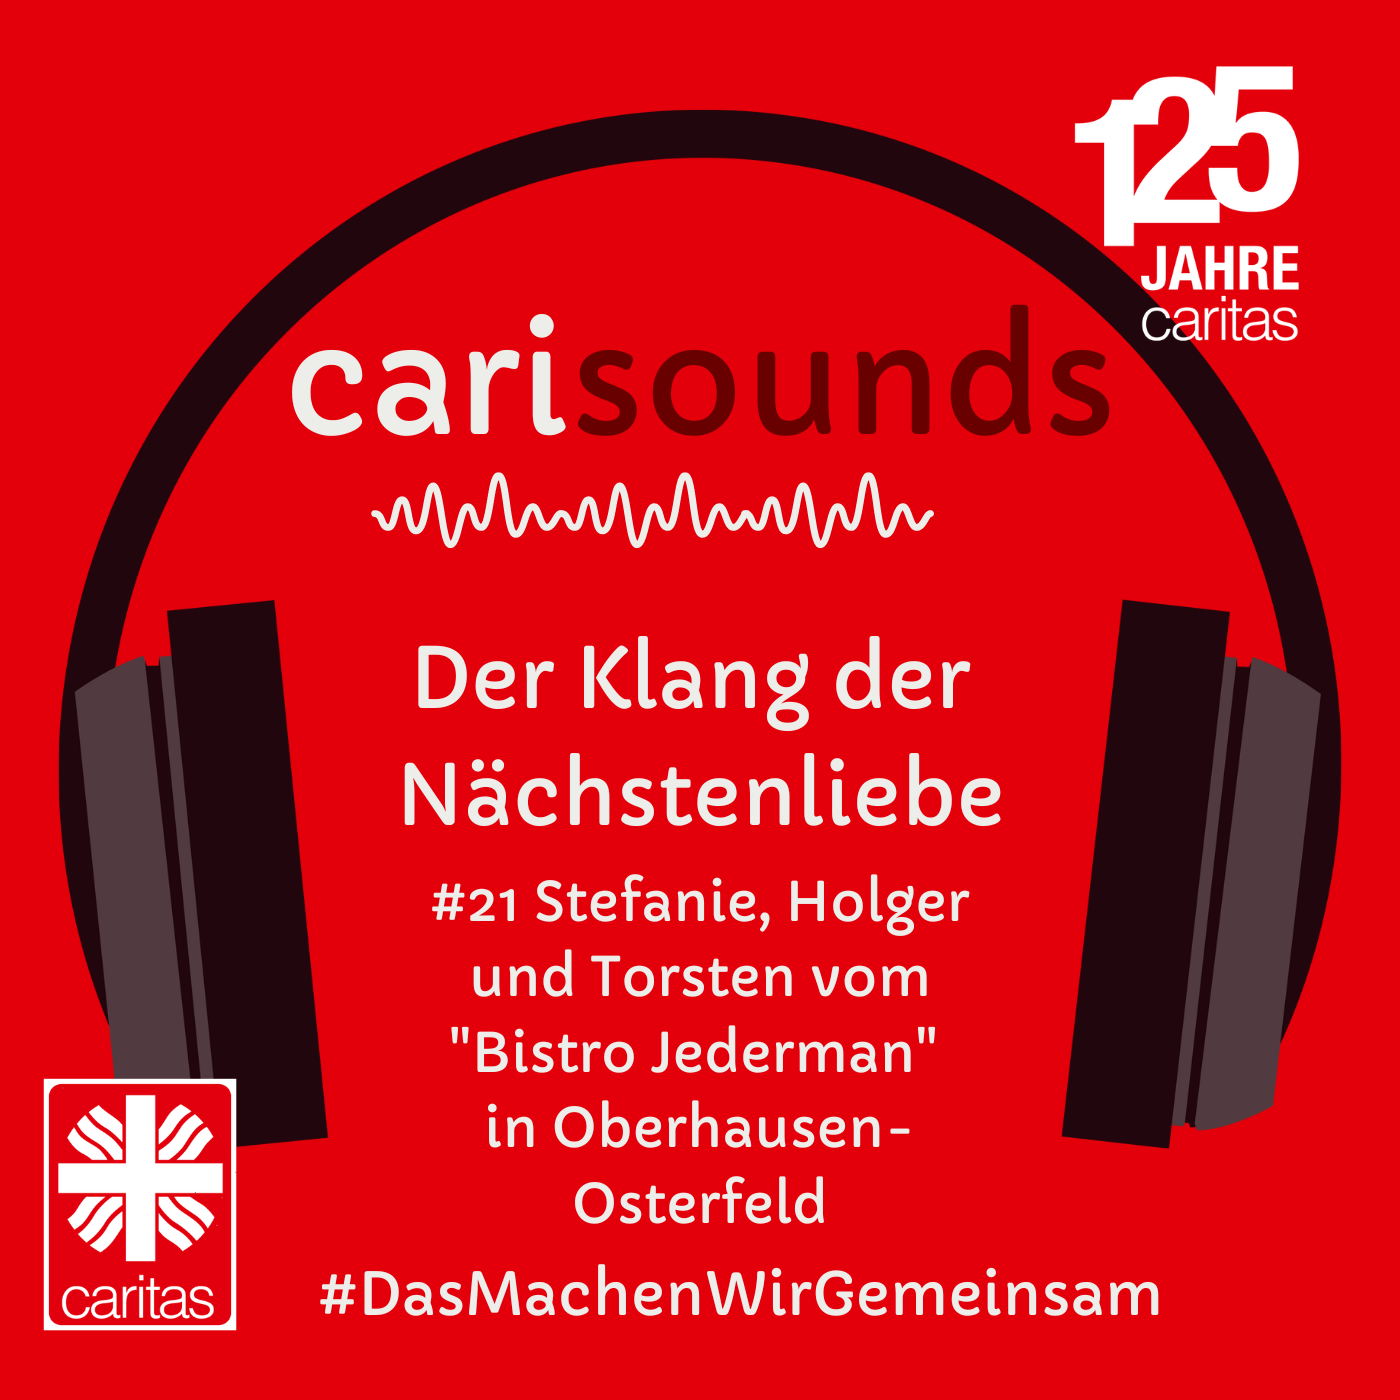 #21 carisounds - Der Klang der Nächstenliebe - Stefanie, Holger und Torsten vom 